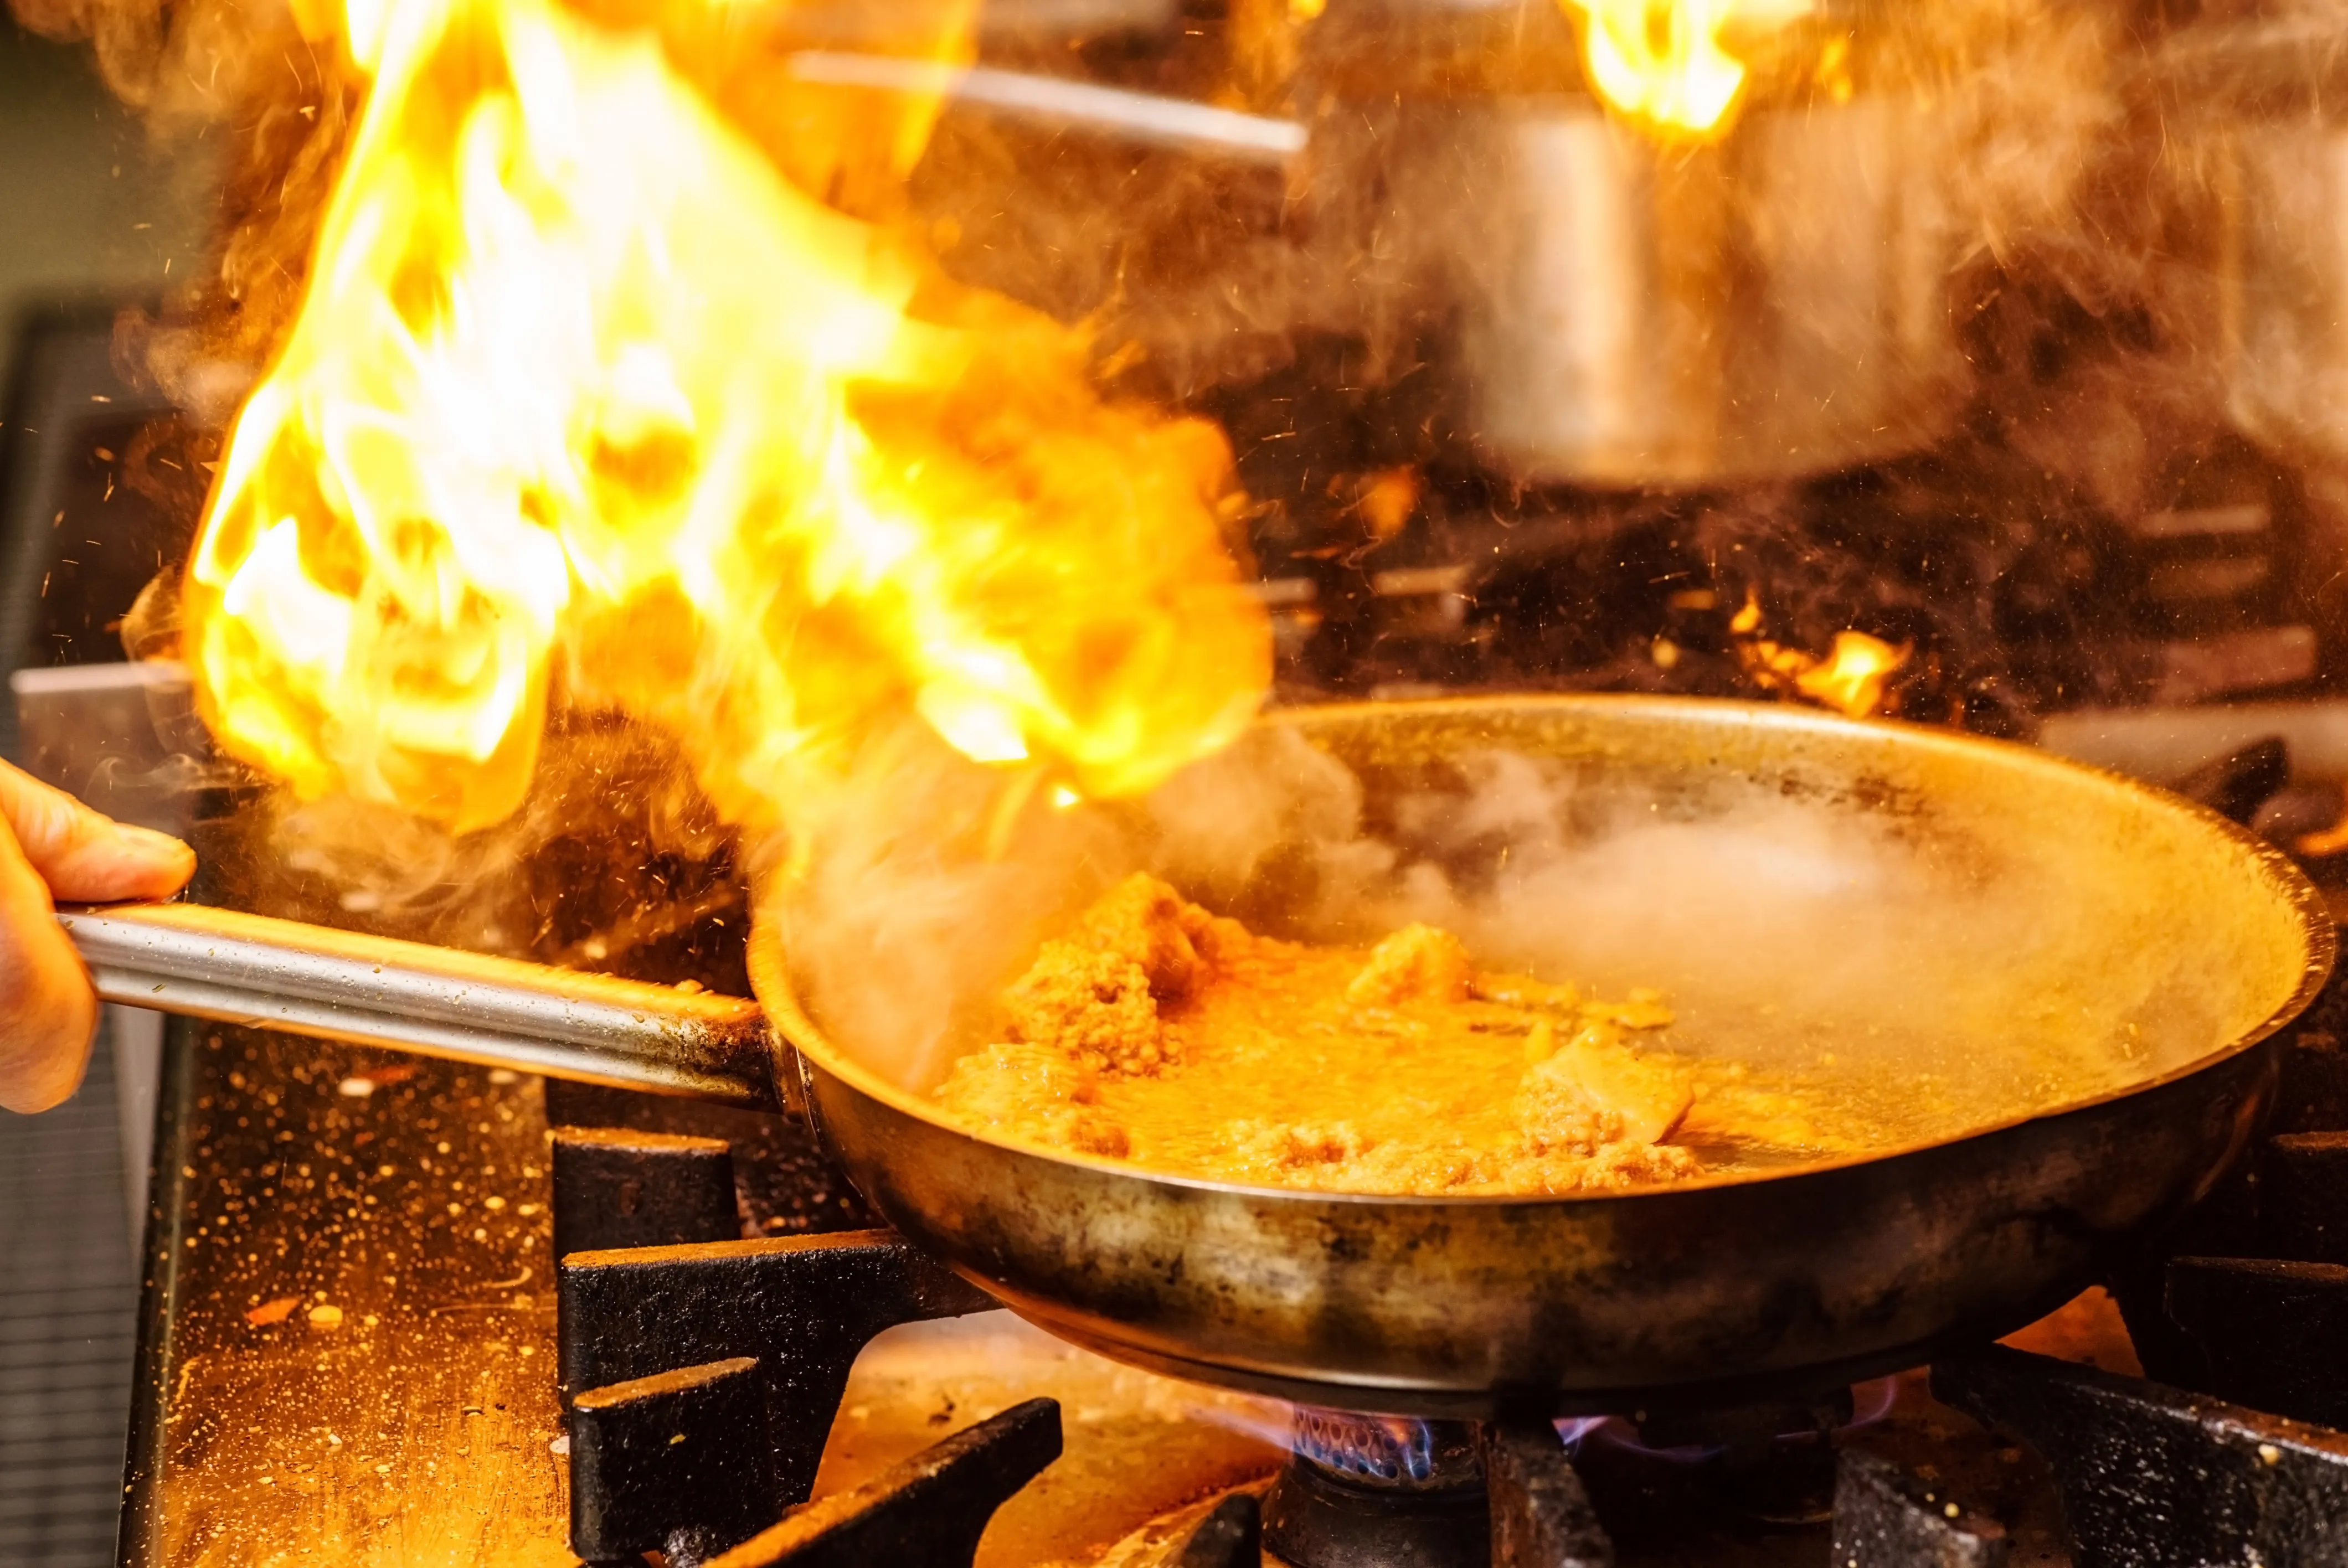 Flammen züngeln aus einer Pfanne mit kochendem Essen auf einem Gasherd, Funken und Rauch steigen auf